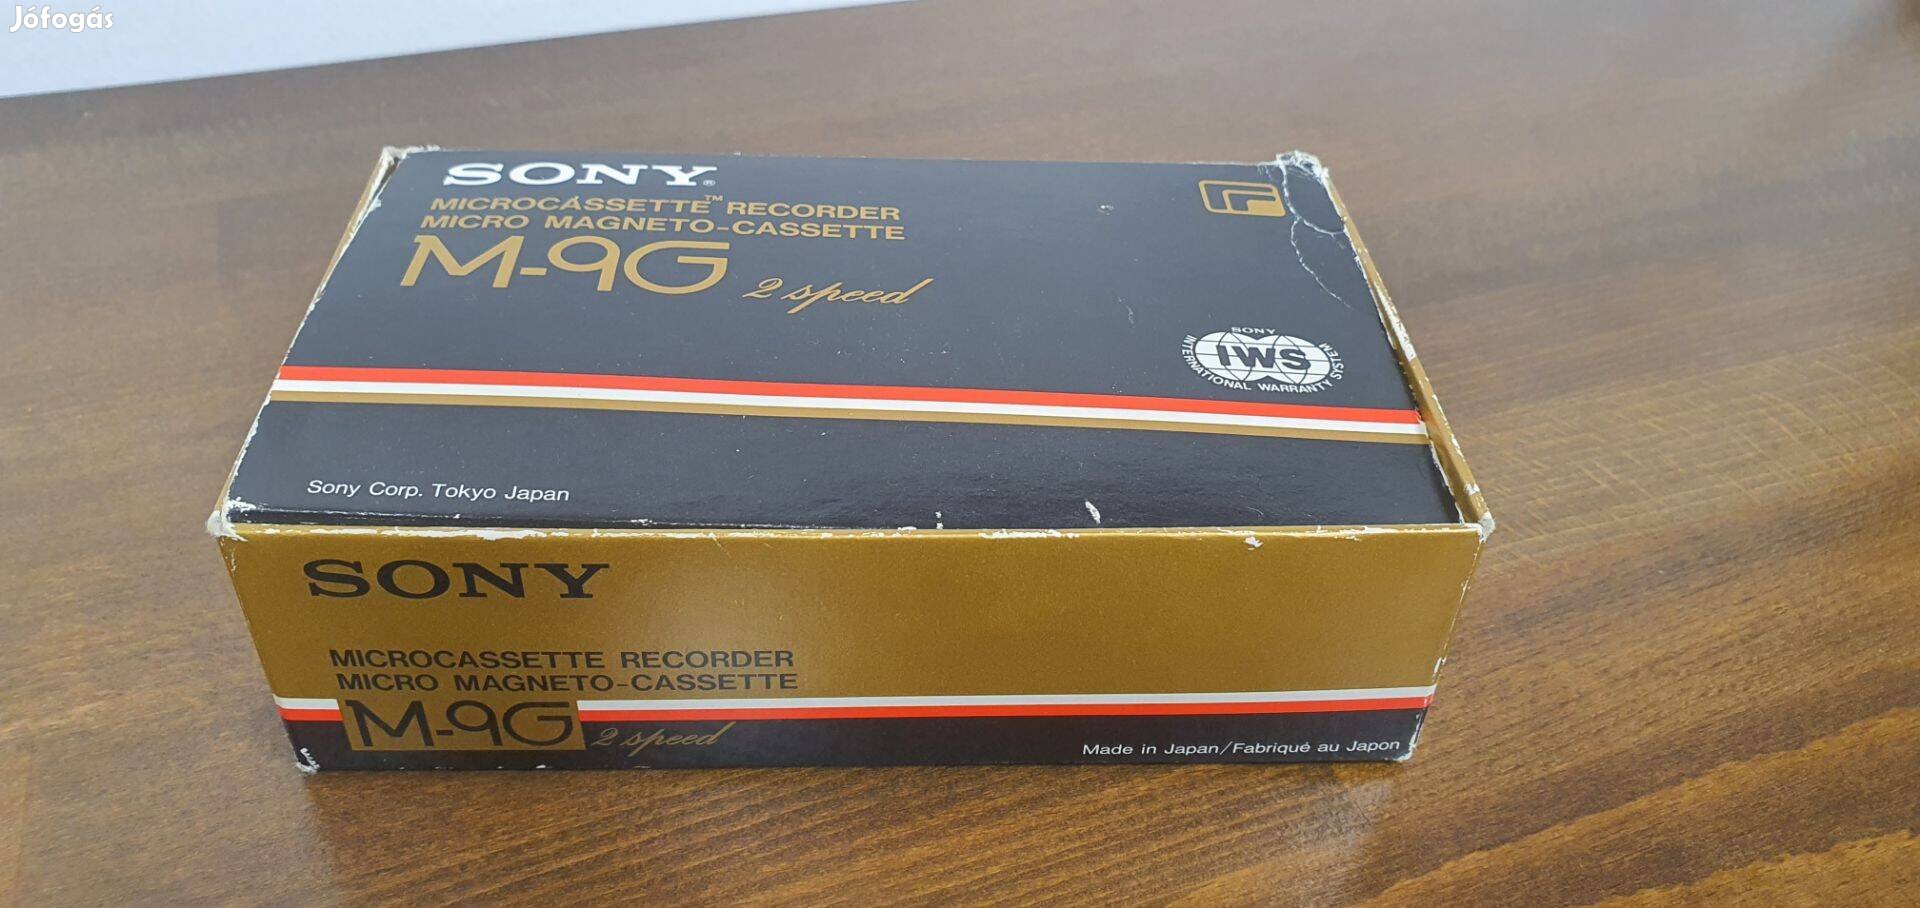 Sony M9G mikrokazettás recorder gold, gyűjtői darab